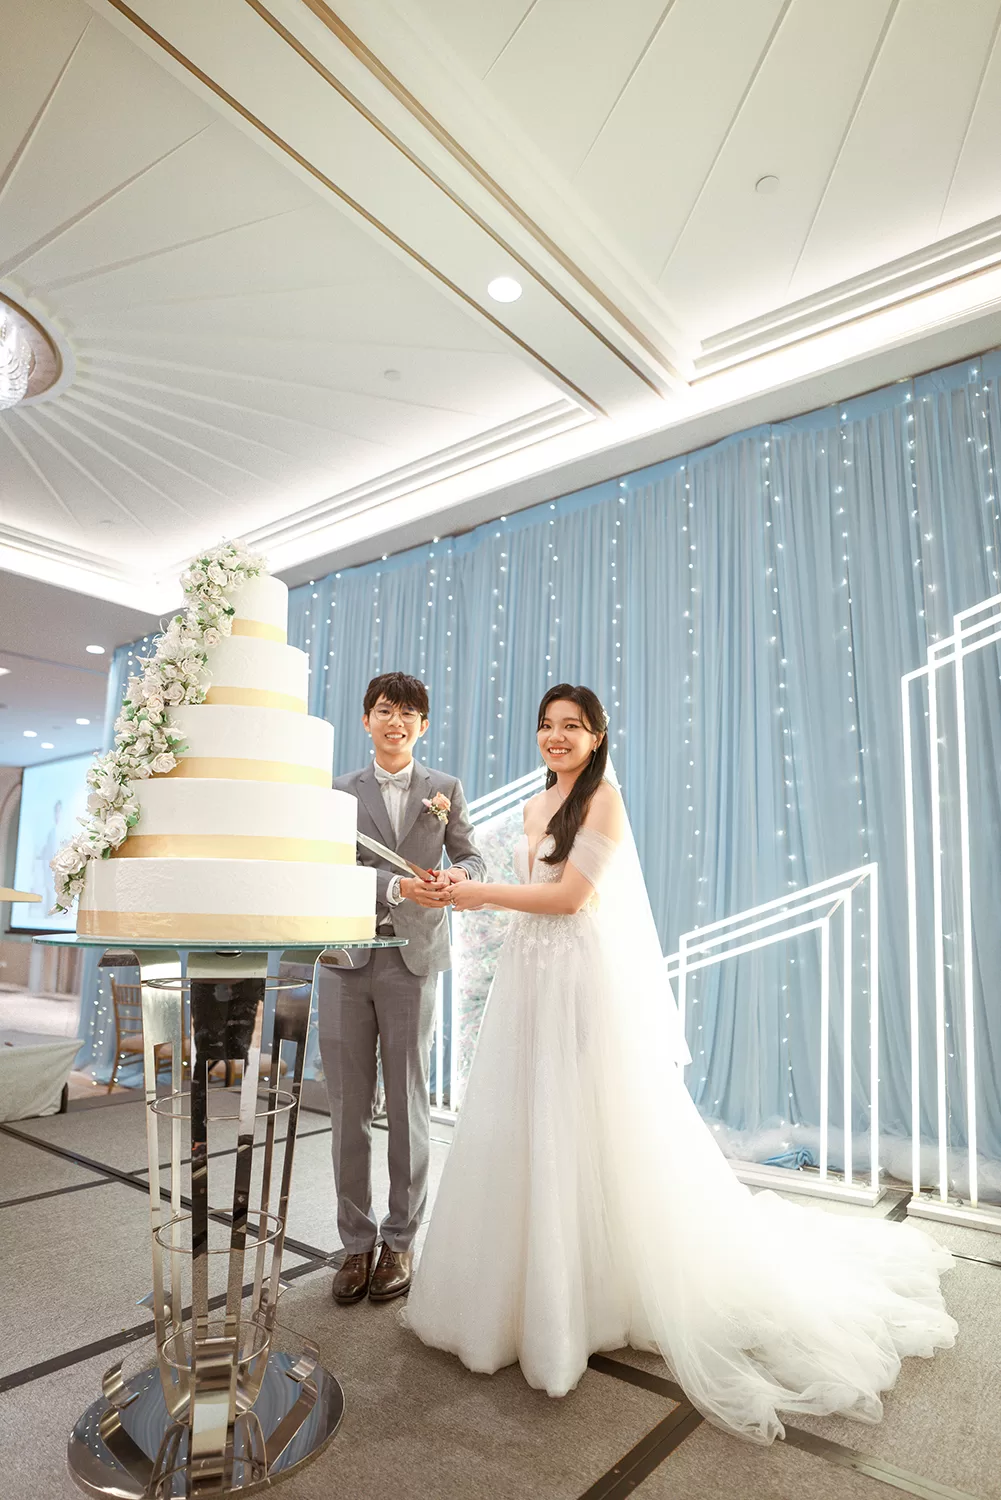 Actual day wedding at Equarius Hotel, Singapore.